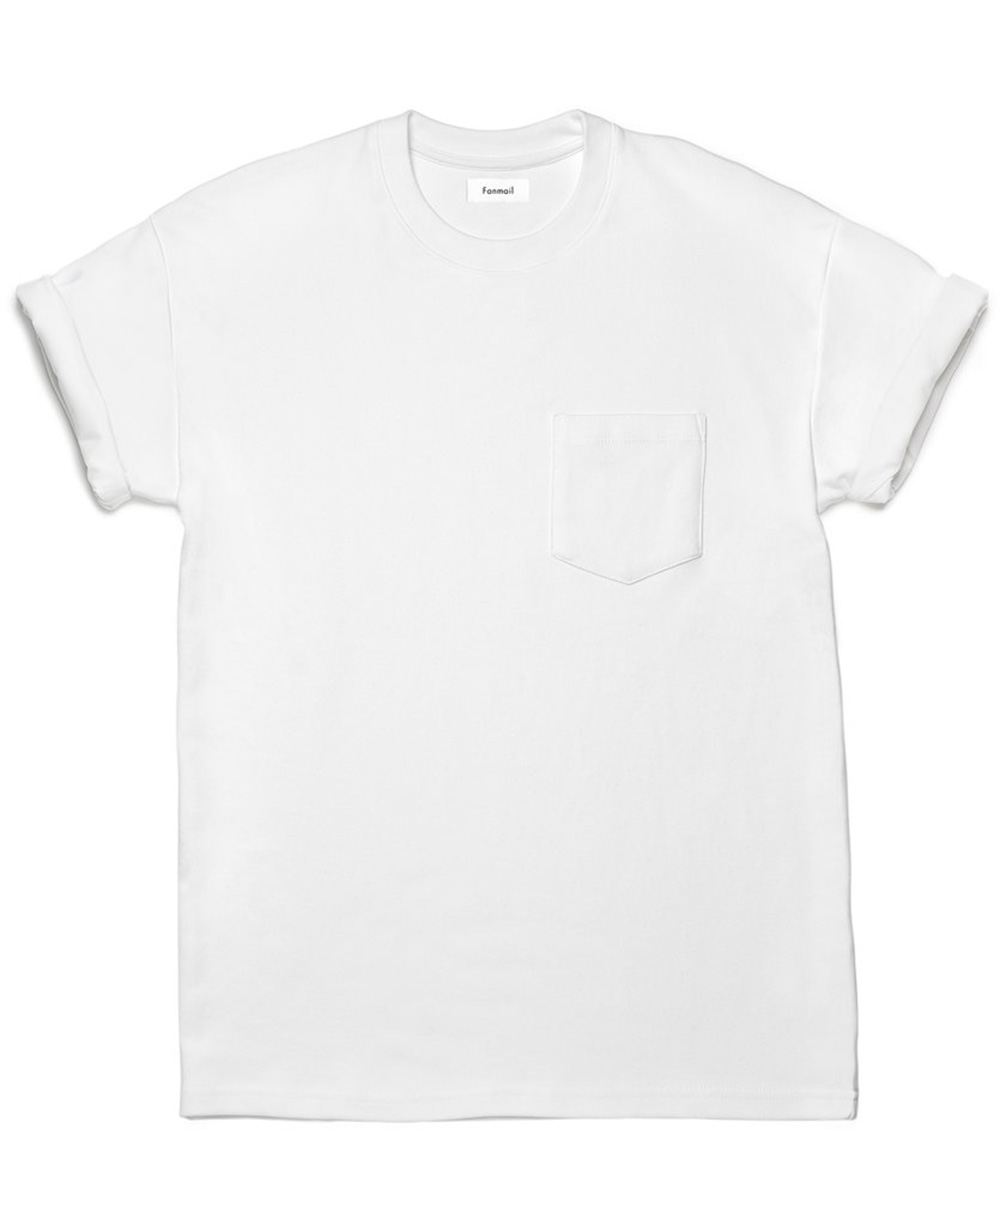 【衣帽间】如果你穿腻了优衣库的白色T恤 不妨看看这几个品牌